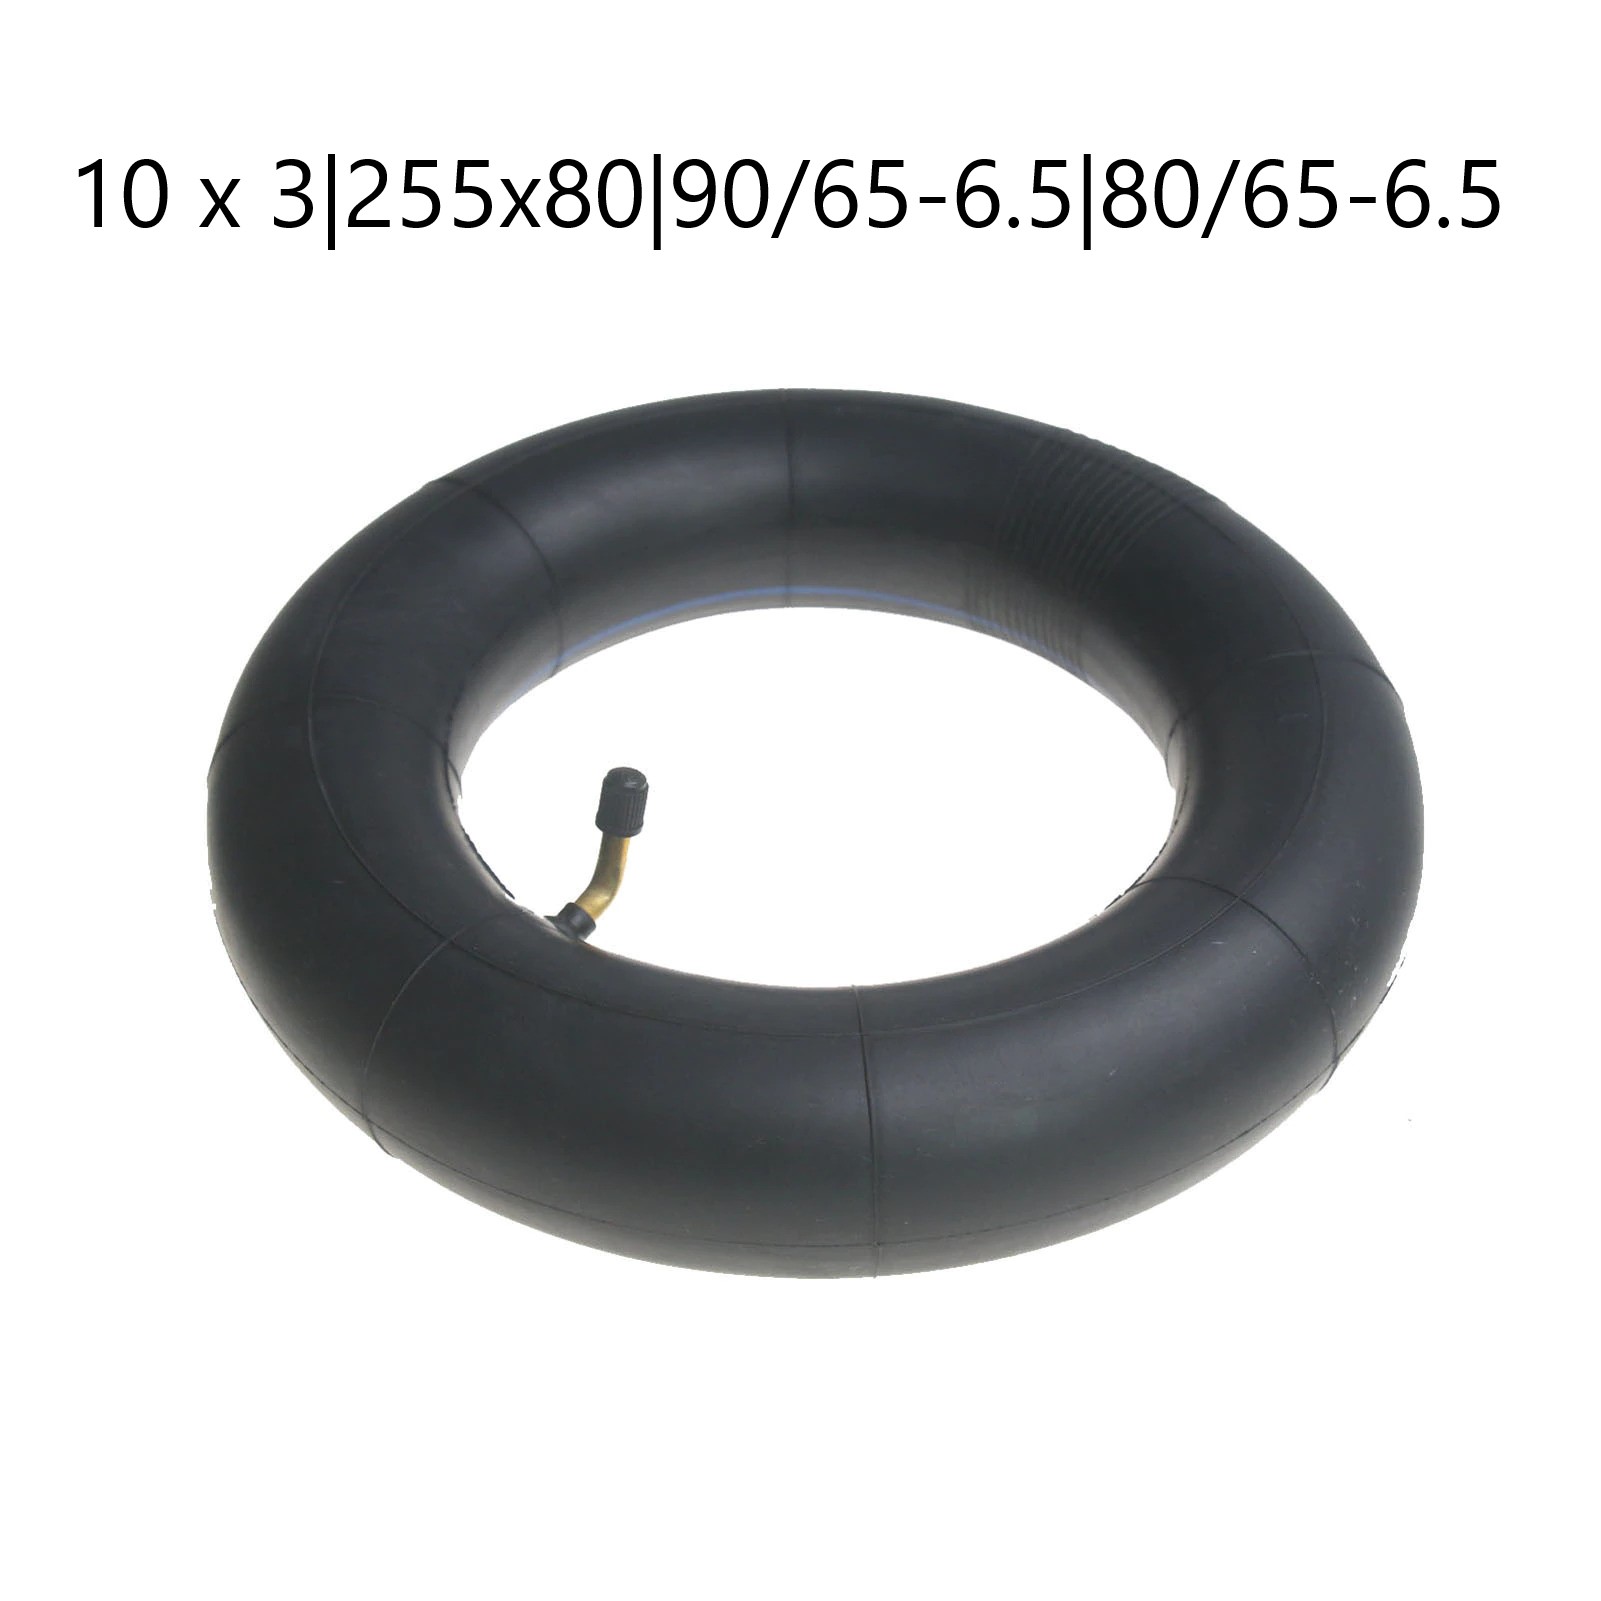 ยางใน 10 x 3 Inner Tube 255 x 80 Inner Tube Suitable for 90/65-6.5 and 80/65-6.5 Tires 240mm Diameter Tire